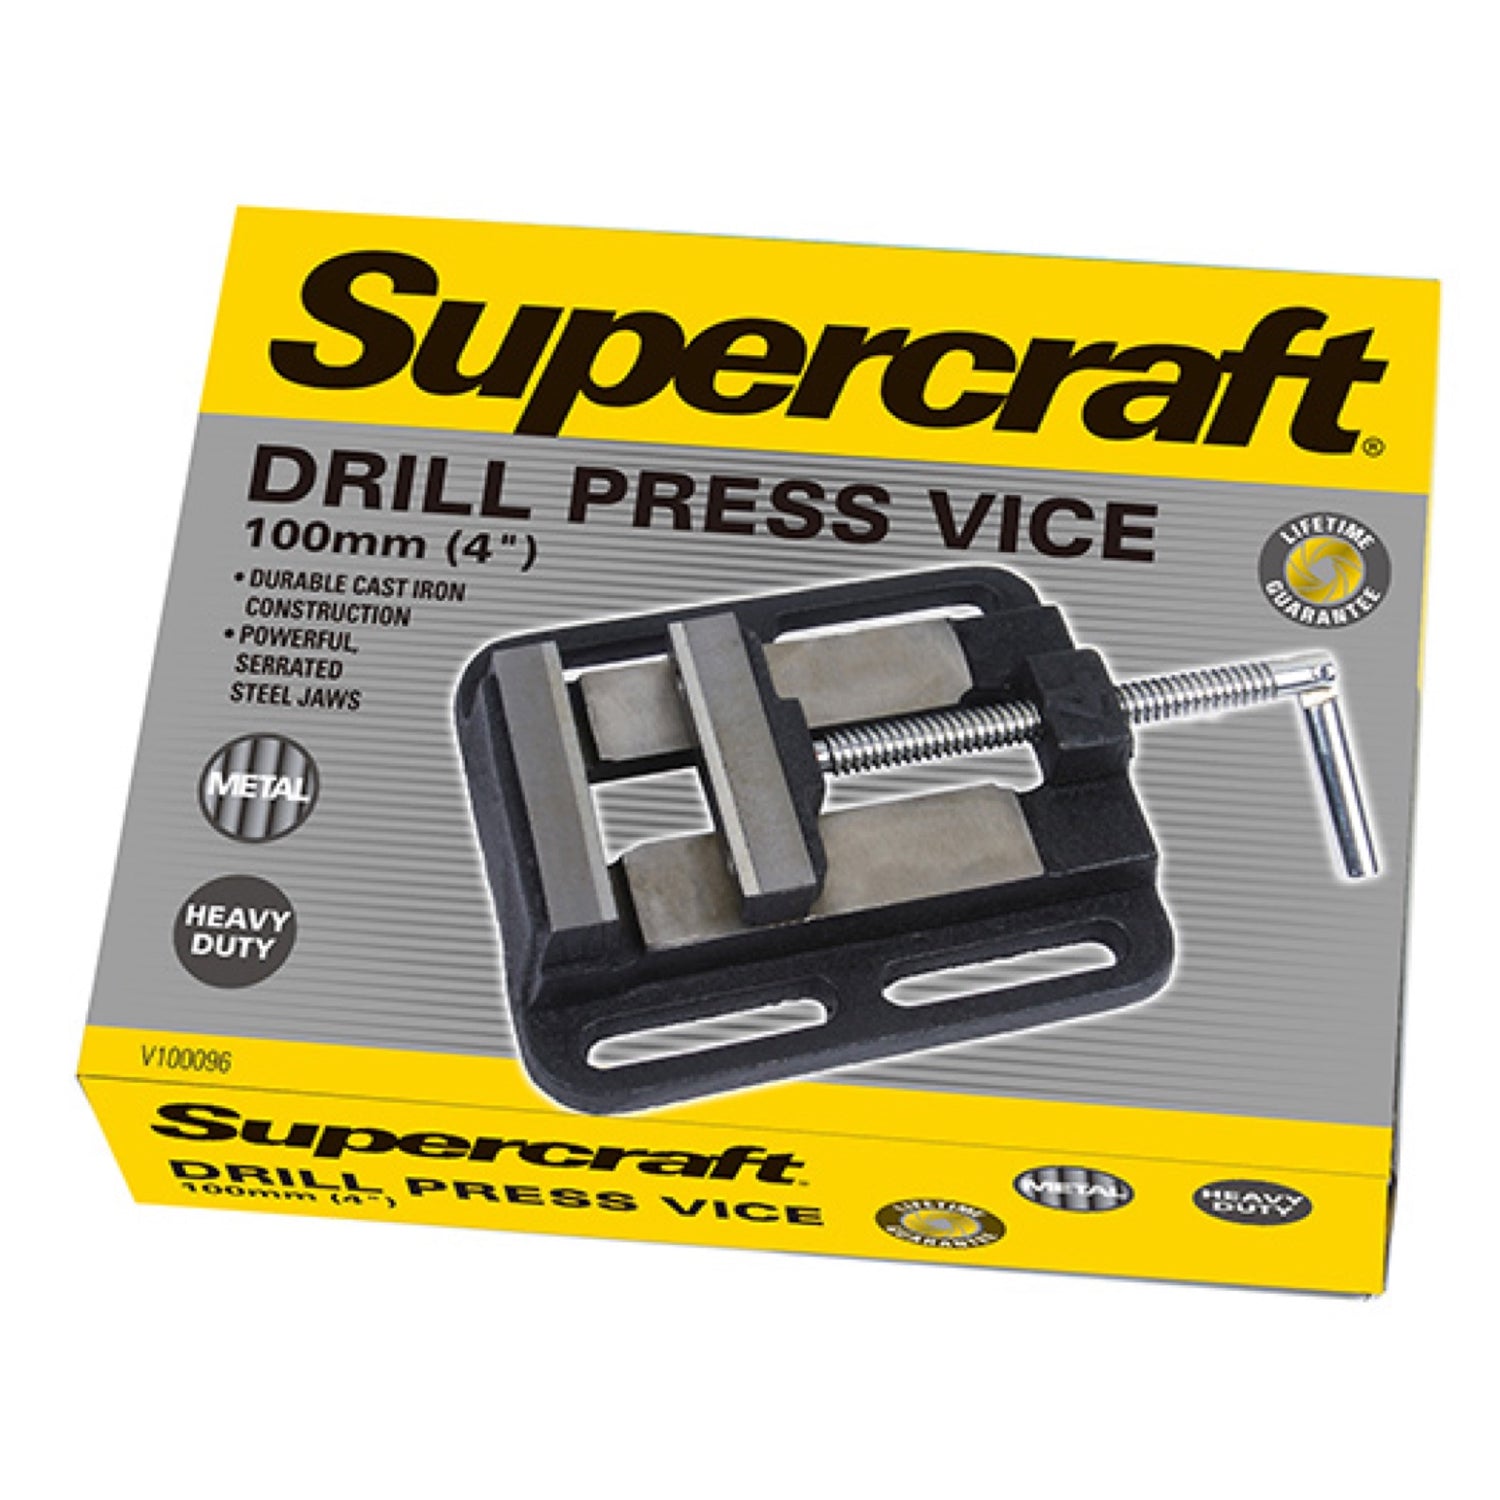 Supercraft Vice Drill Press 100mm